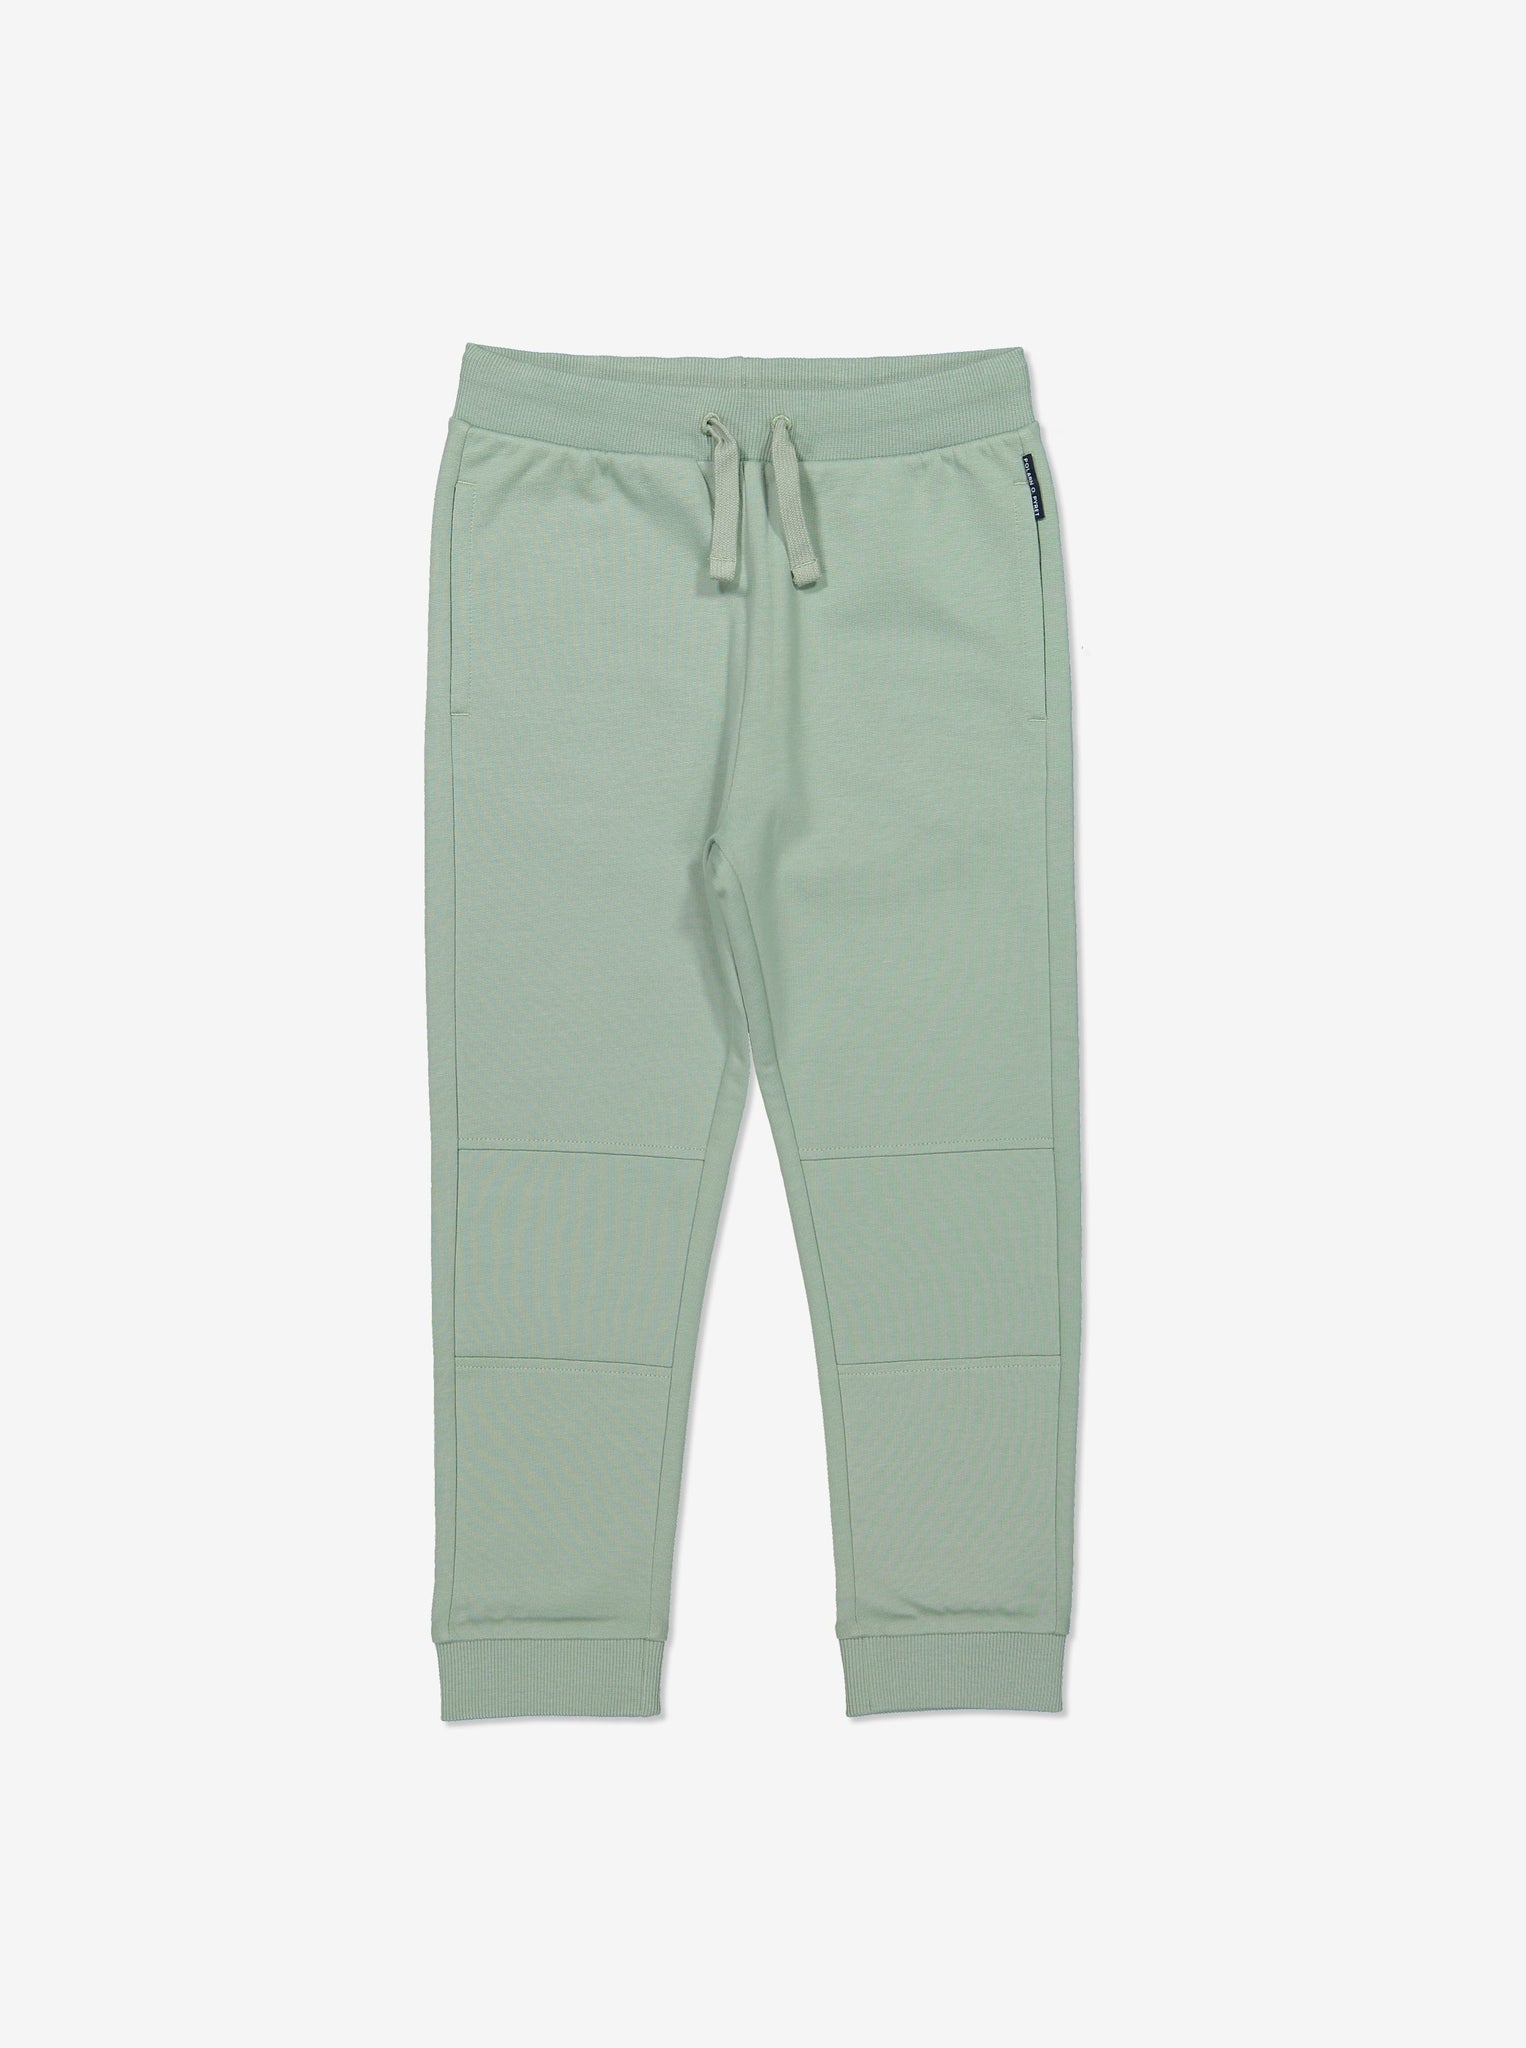 Unisex Green Kids Jersey Trousers